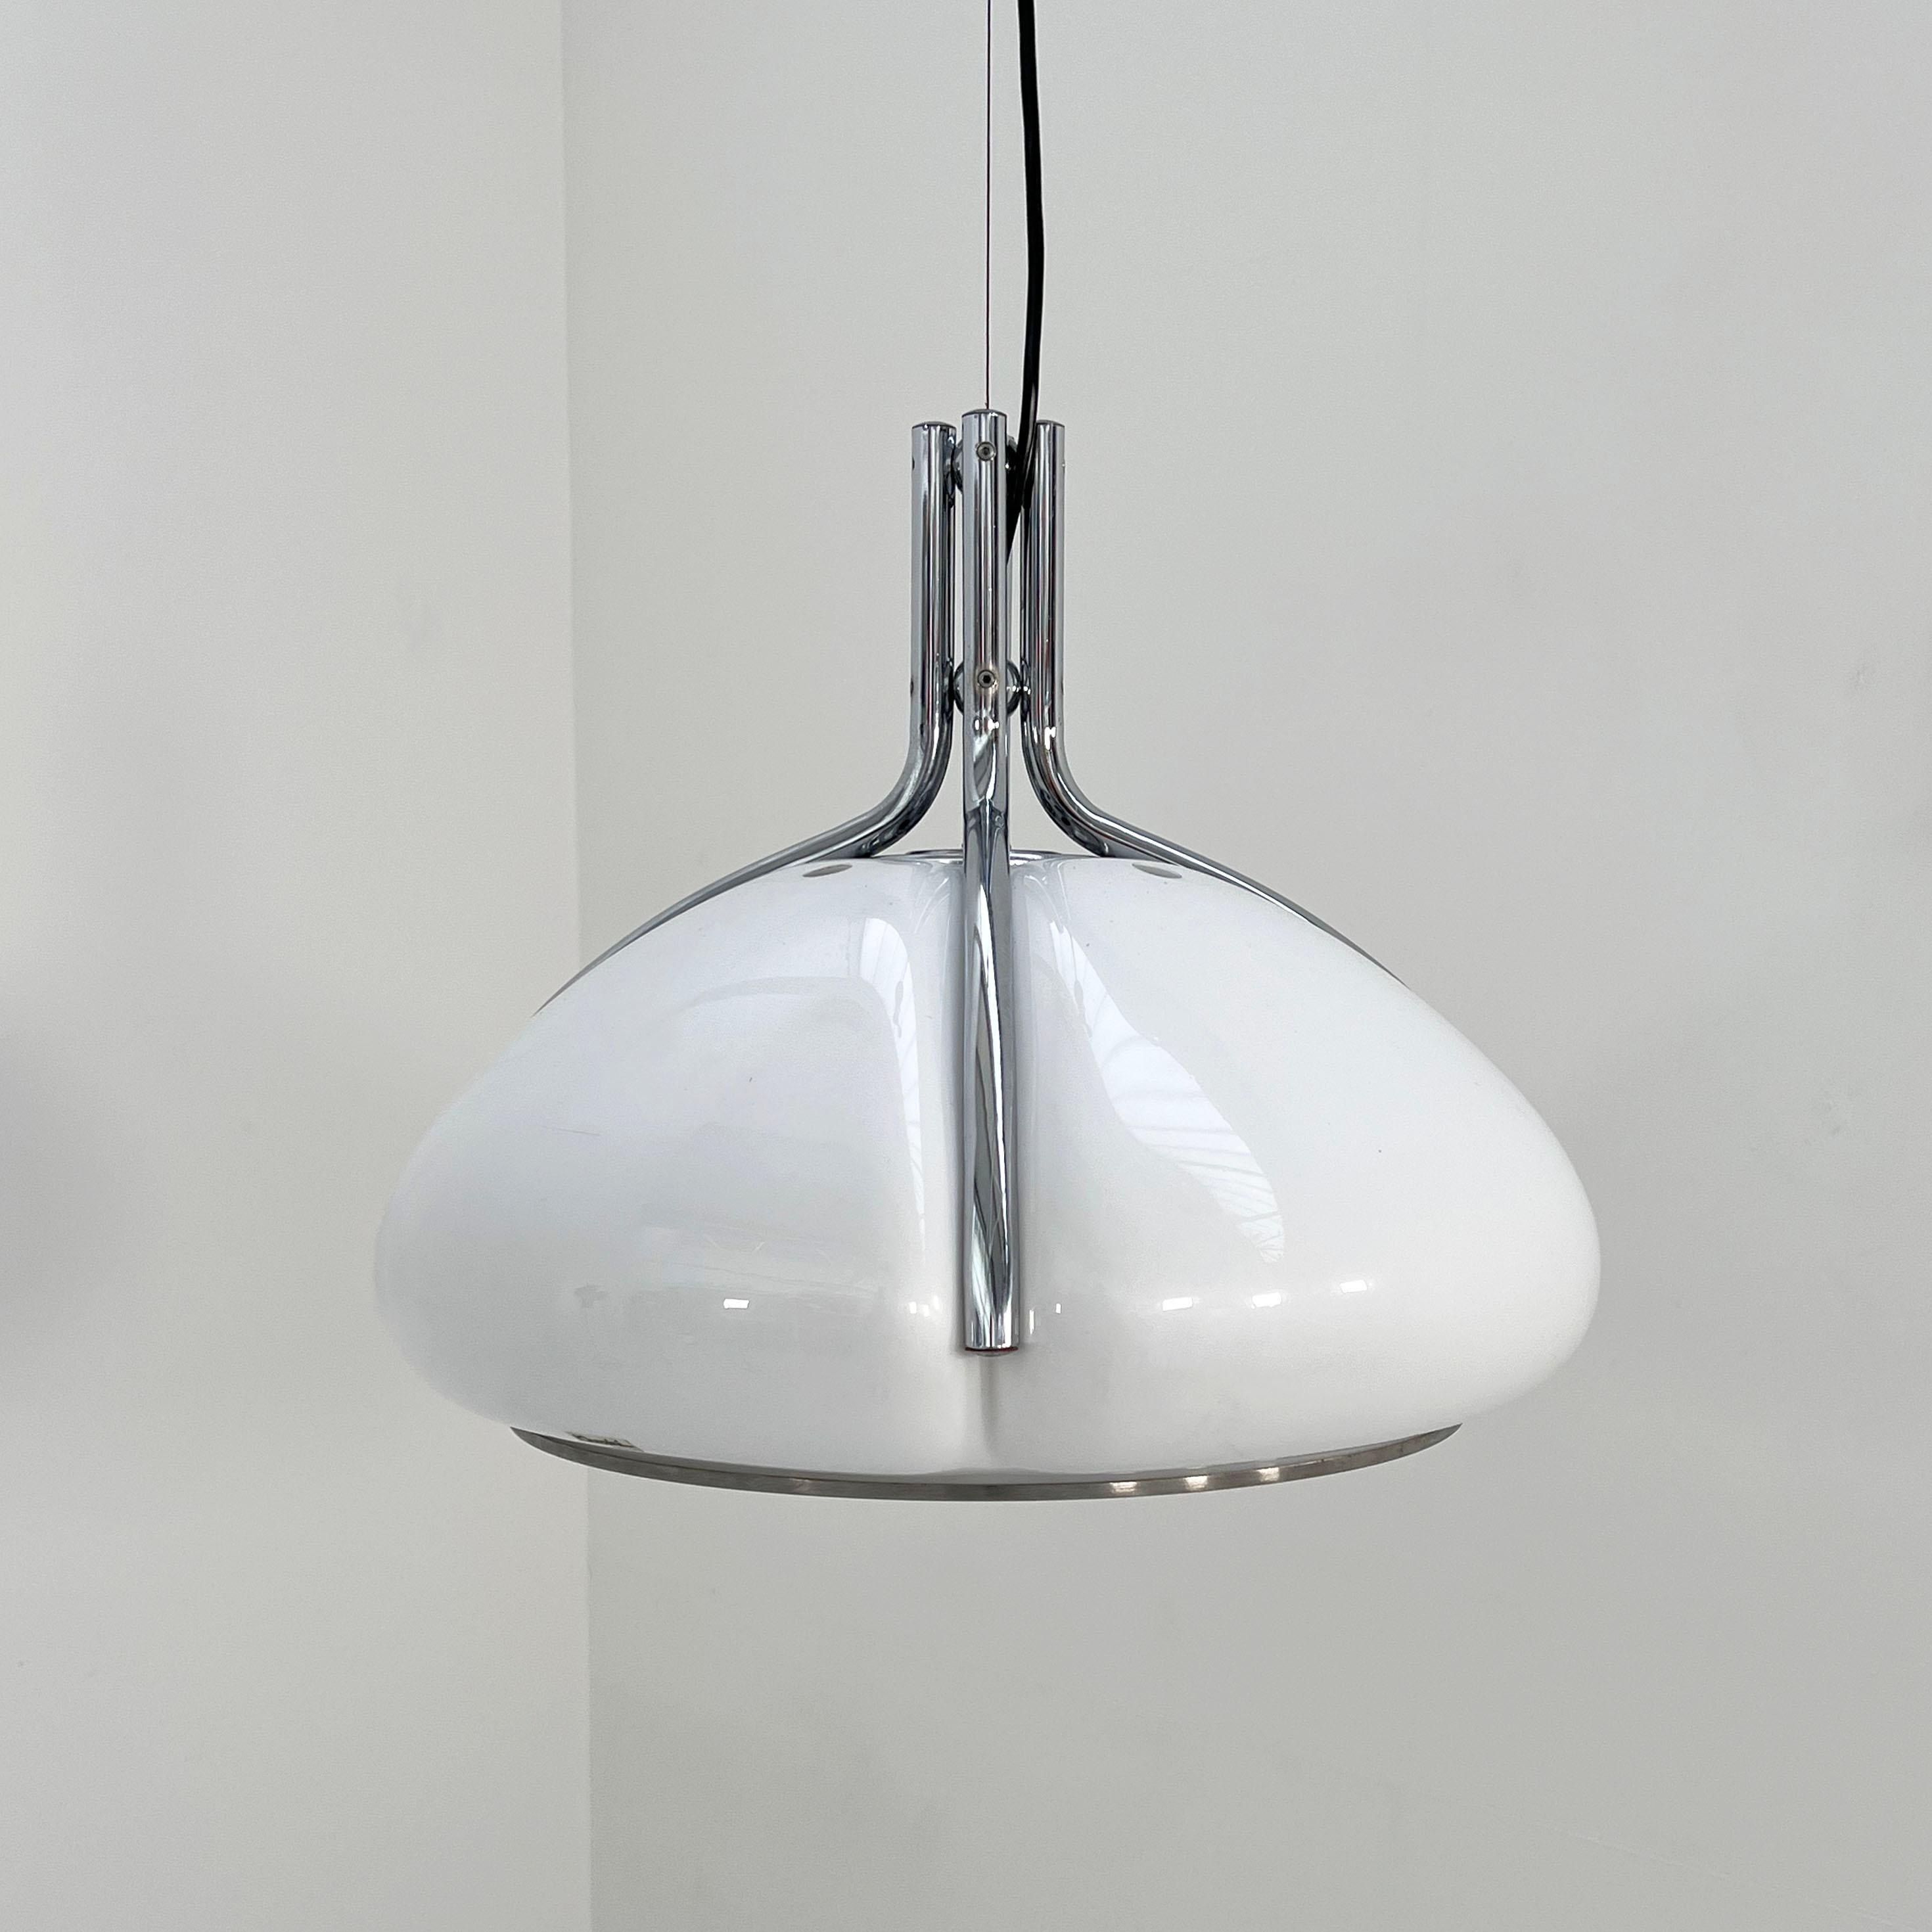 Late 20th Century Quadrifoglio Pendant Lamp by Studio 6G for Harvey Guzzini, 1970s